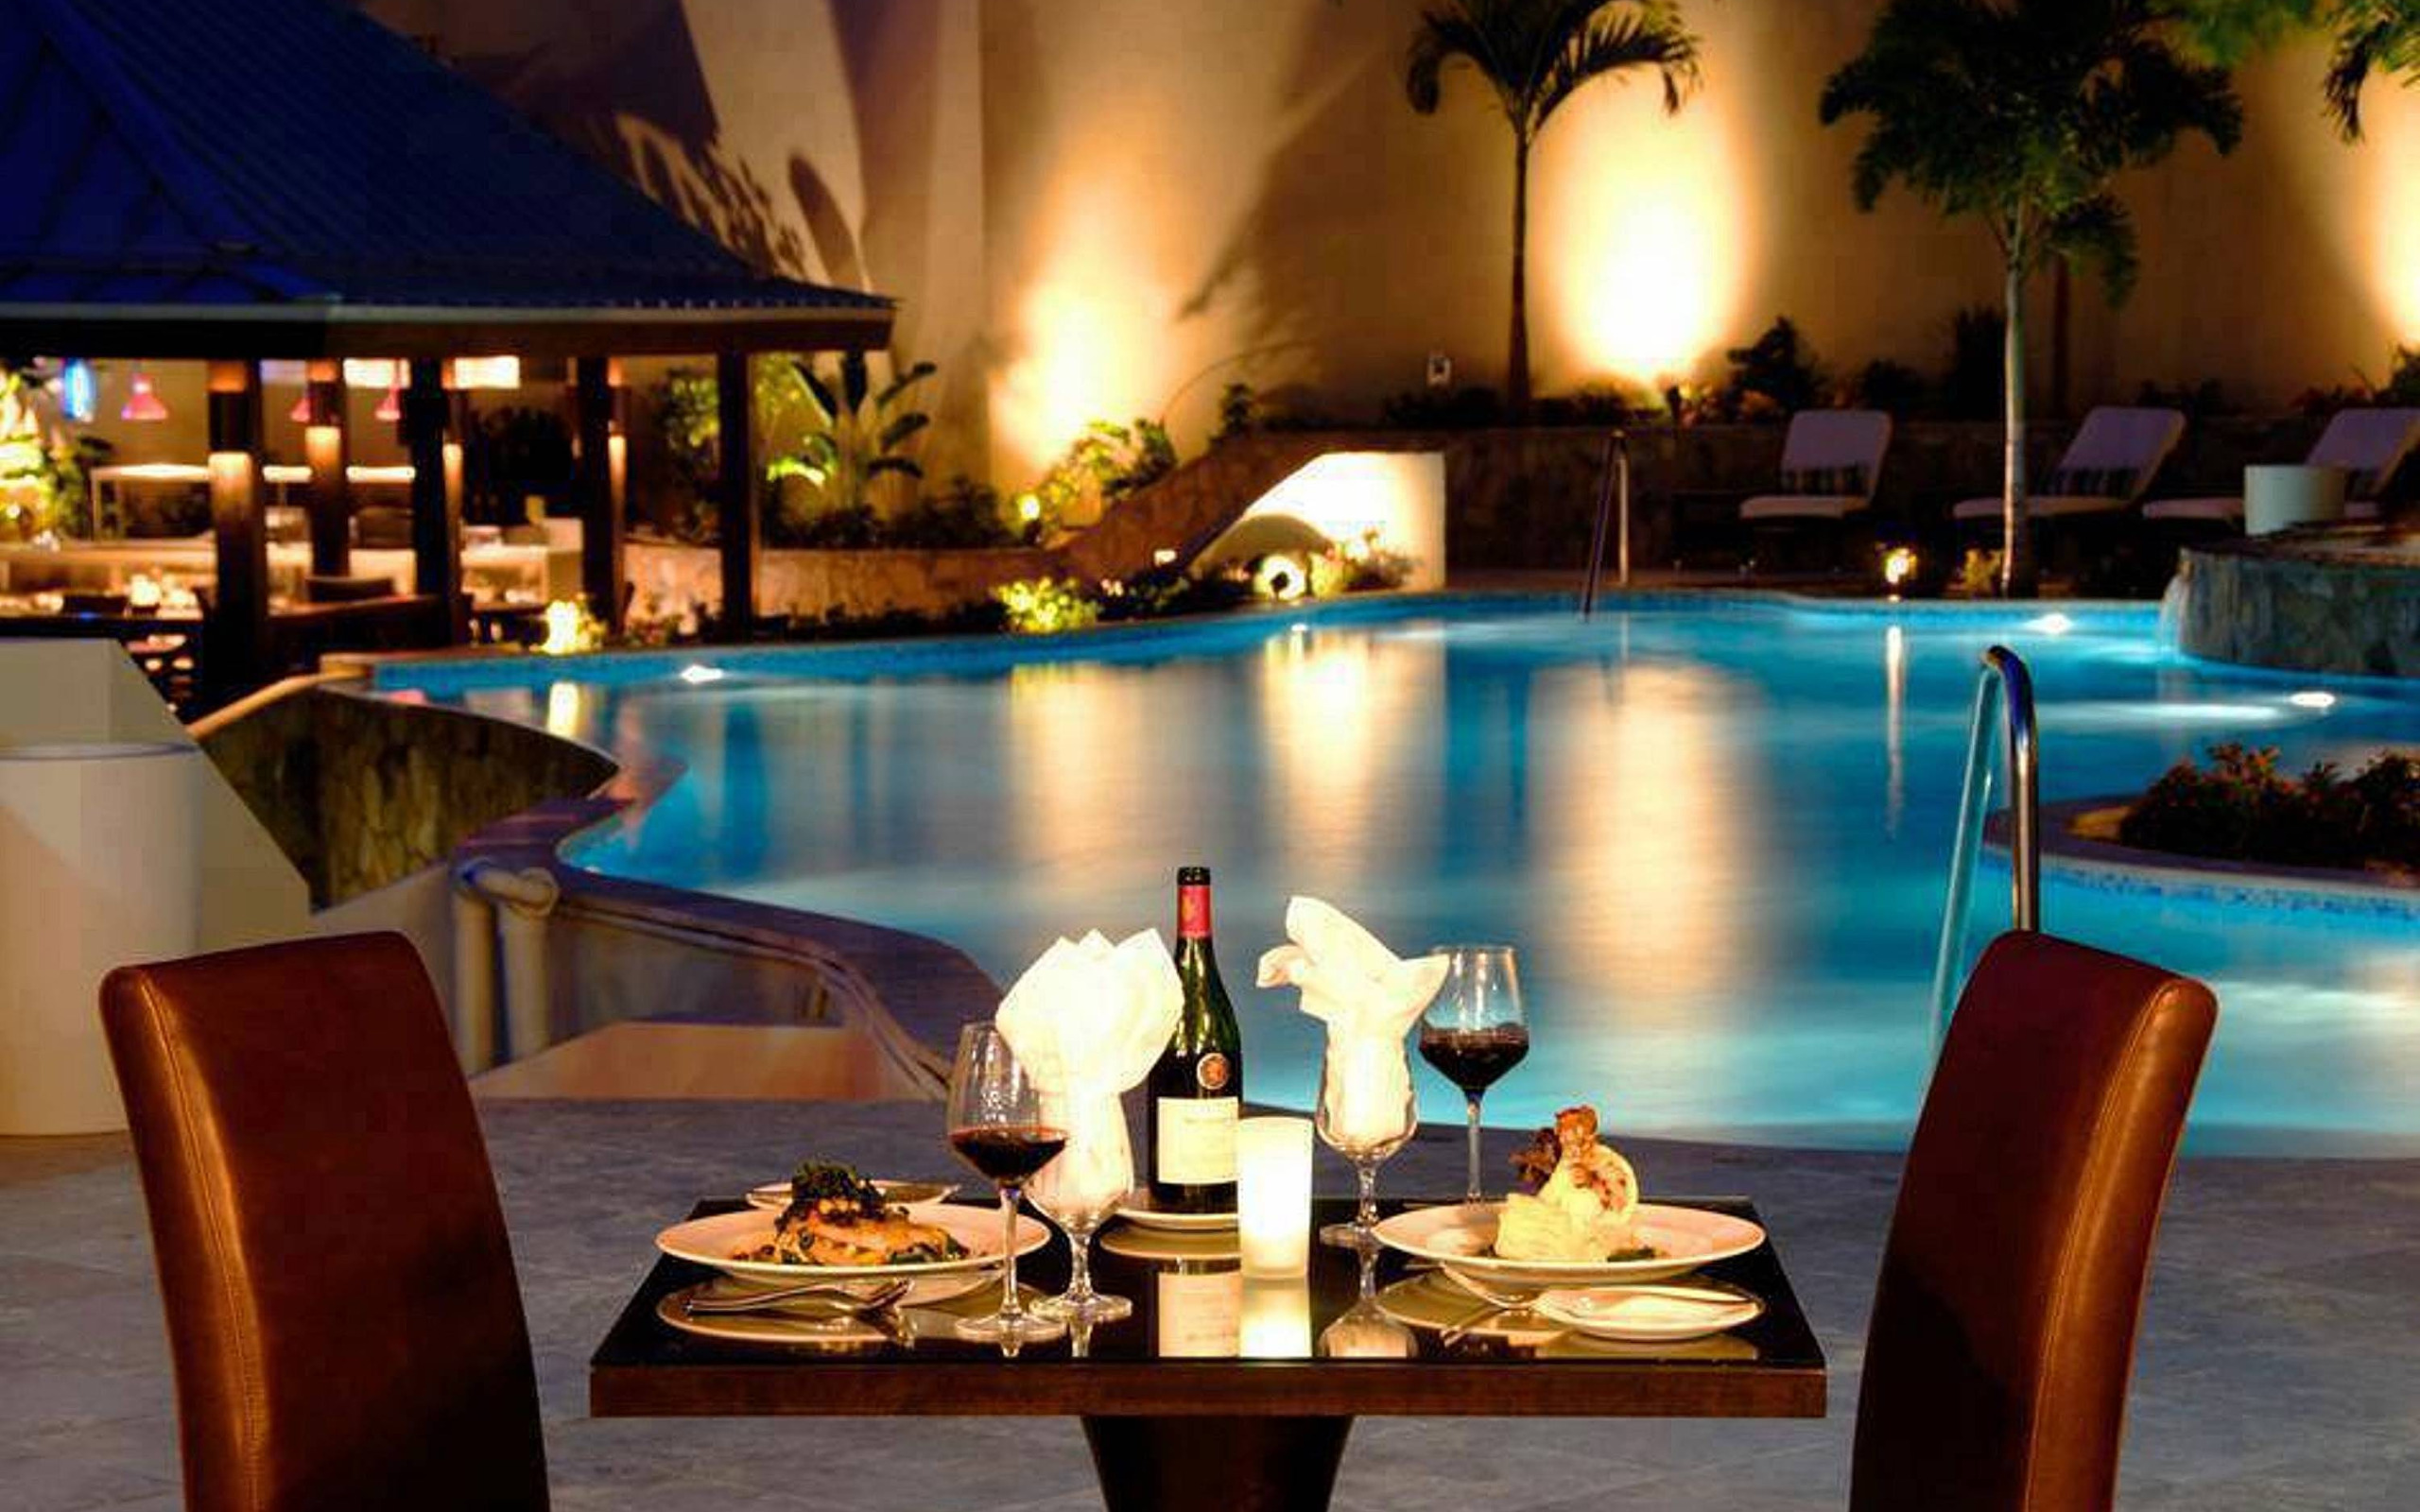 Pool side. Ritz Carlton Мальдивы. Романтический вечер. Романтический вечер в бассейне. Романтический вечер в отеле.